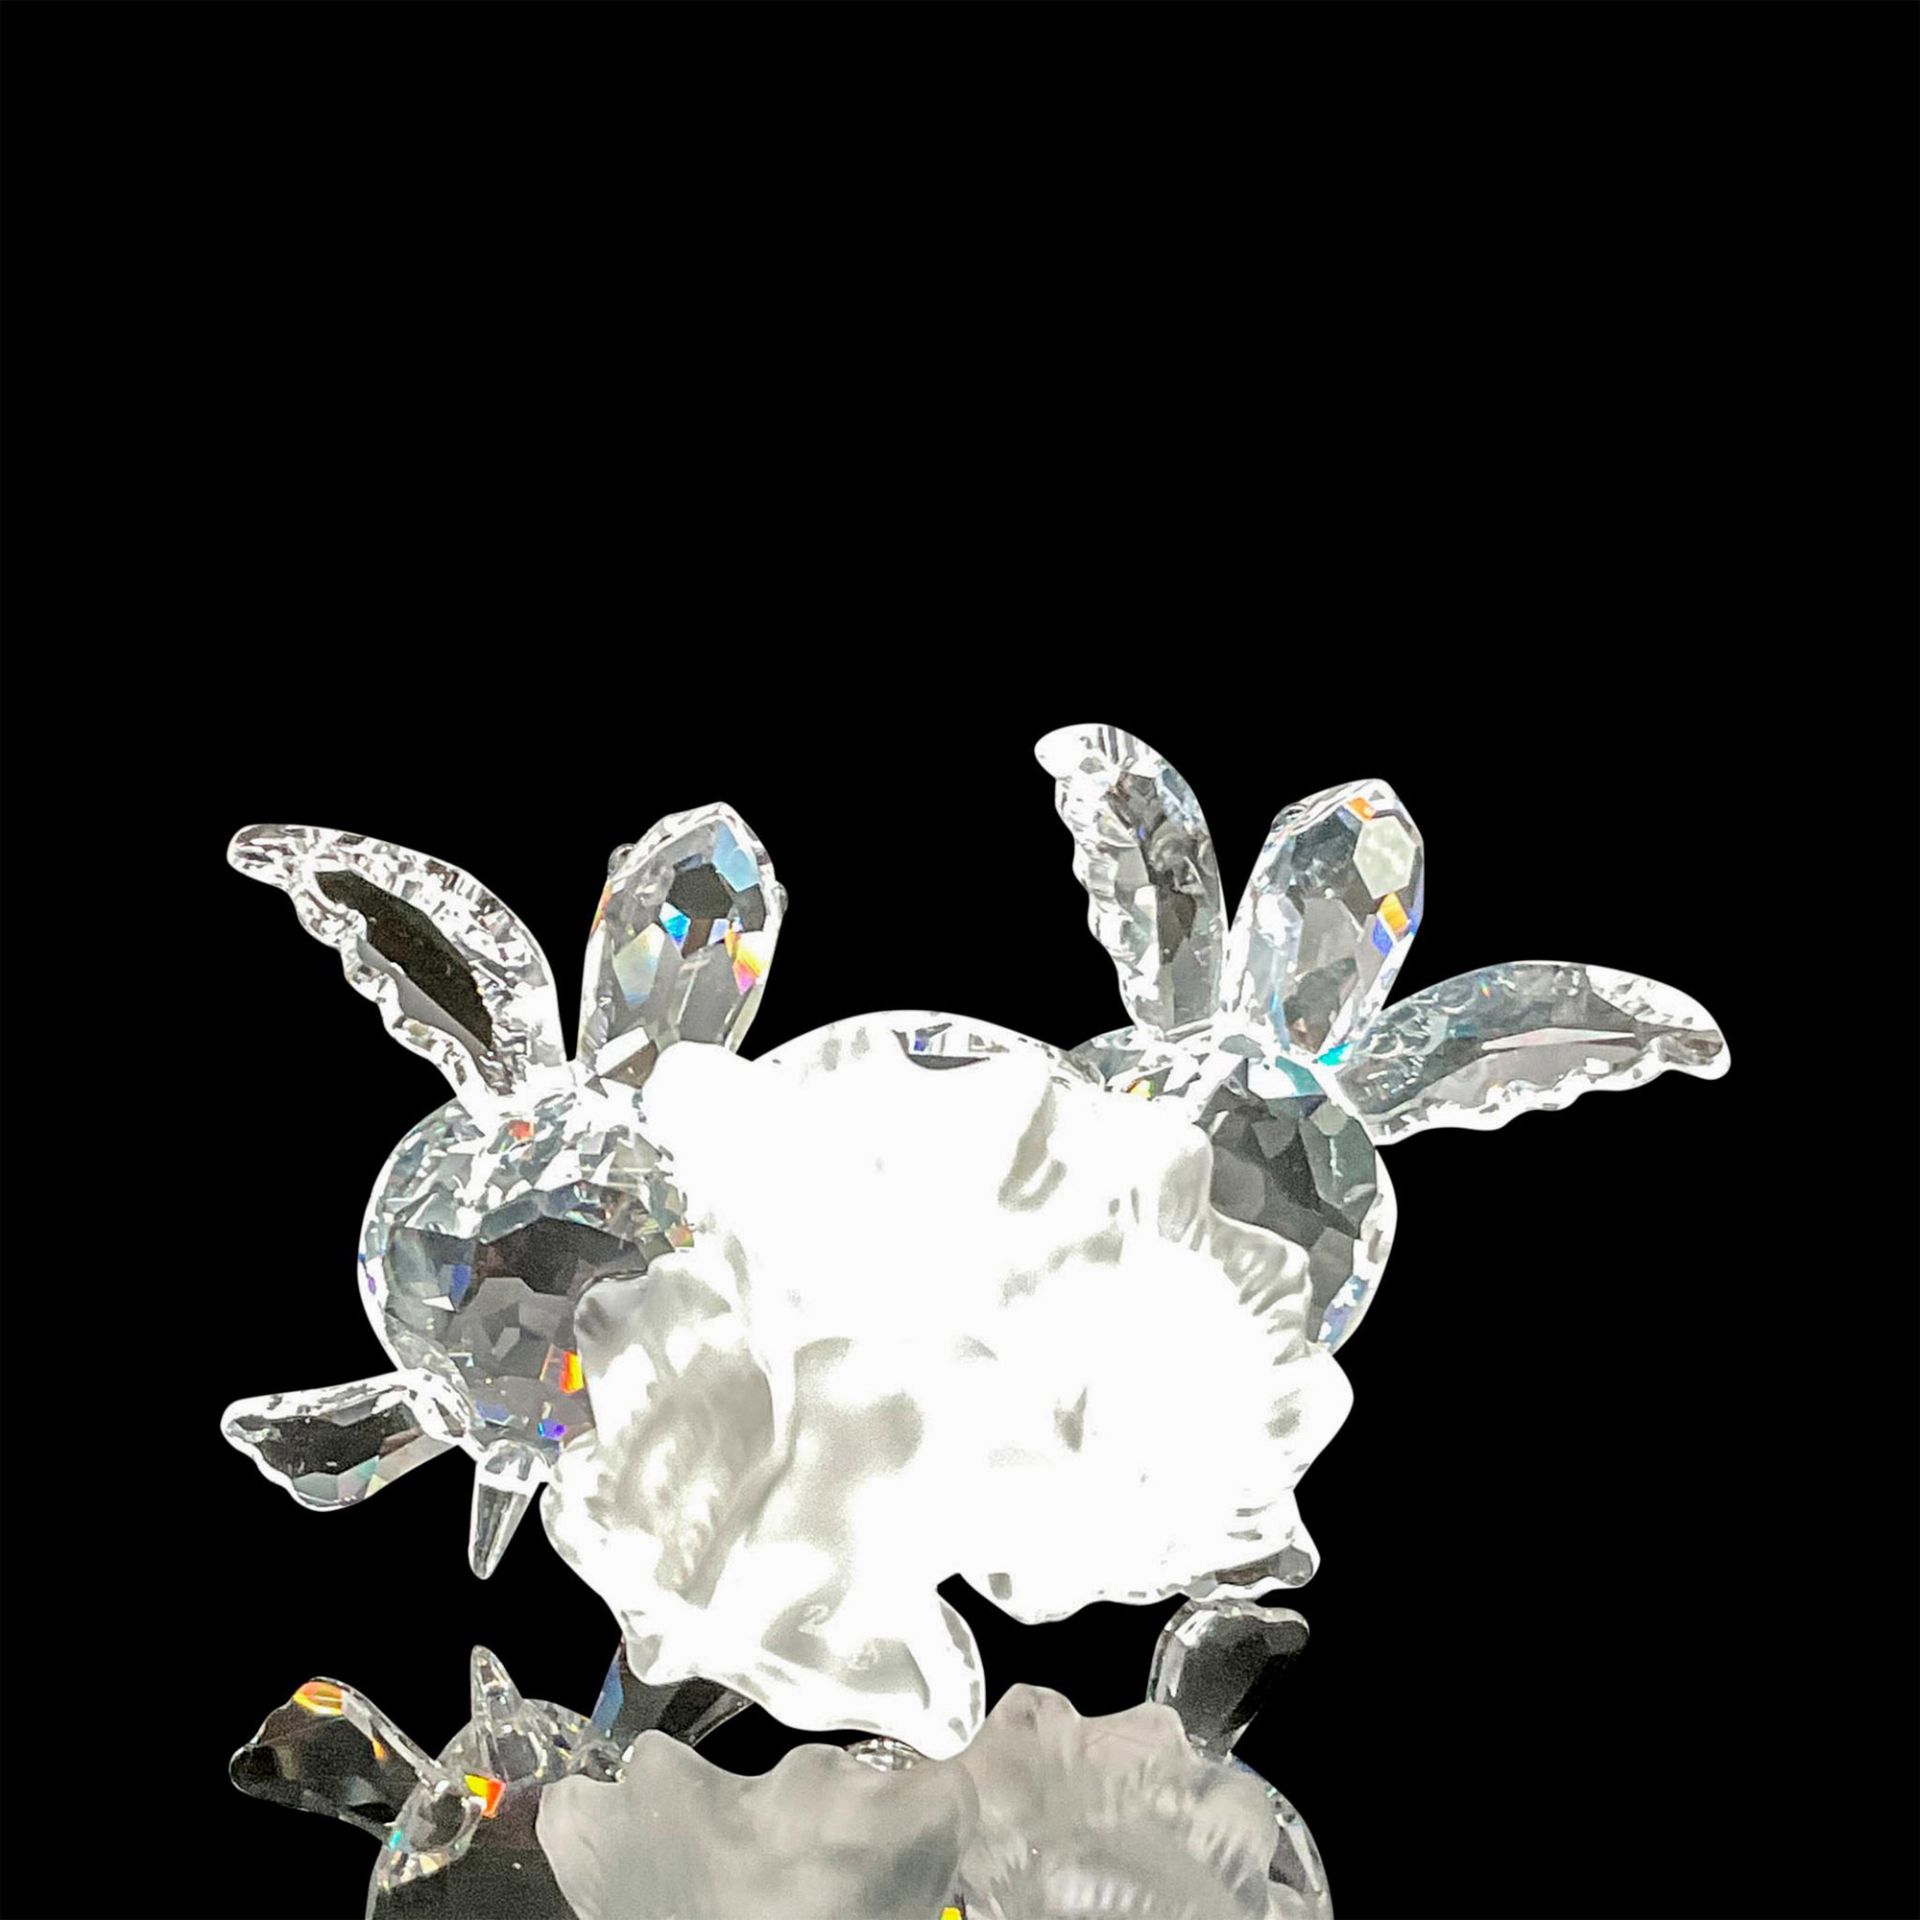 Swarovski Crystal Figurine, Baby Sea Turtles - Image 4 of 5